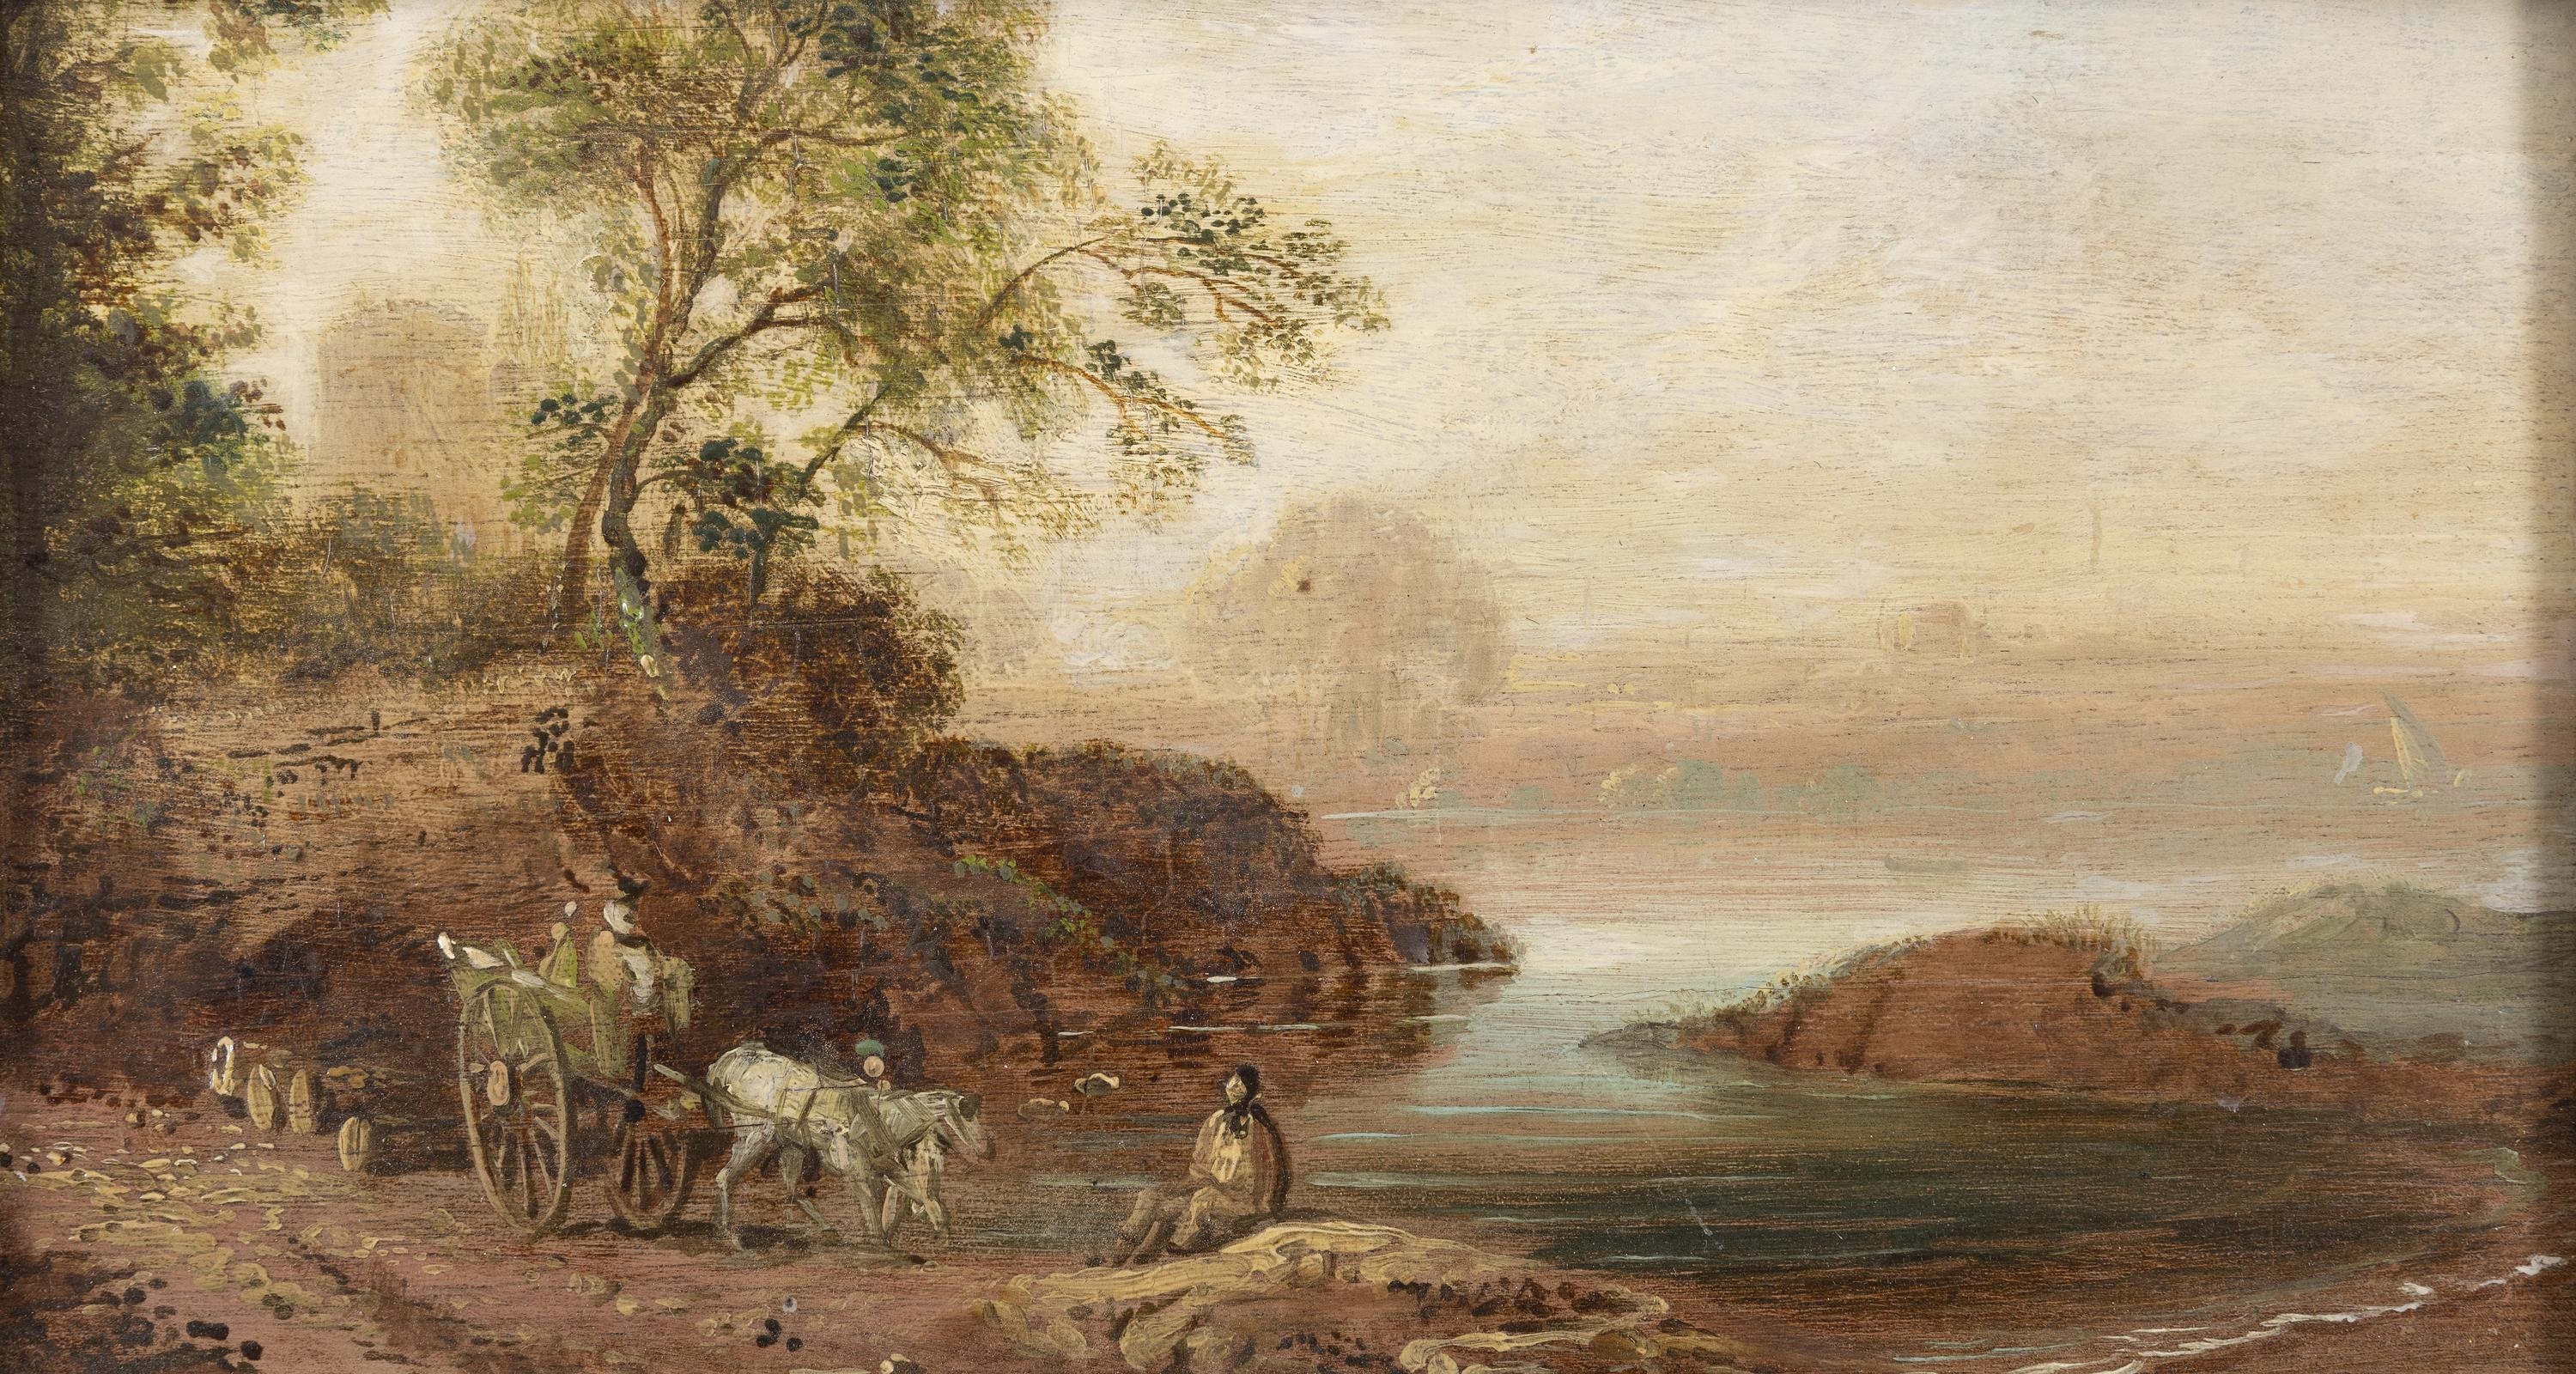 Artwork by William Sadler, Figures in a River Landscape, Made of Oil on wood